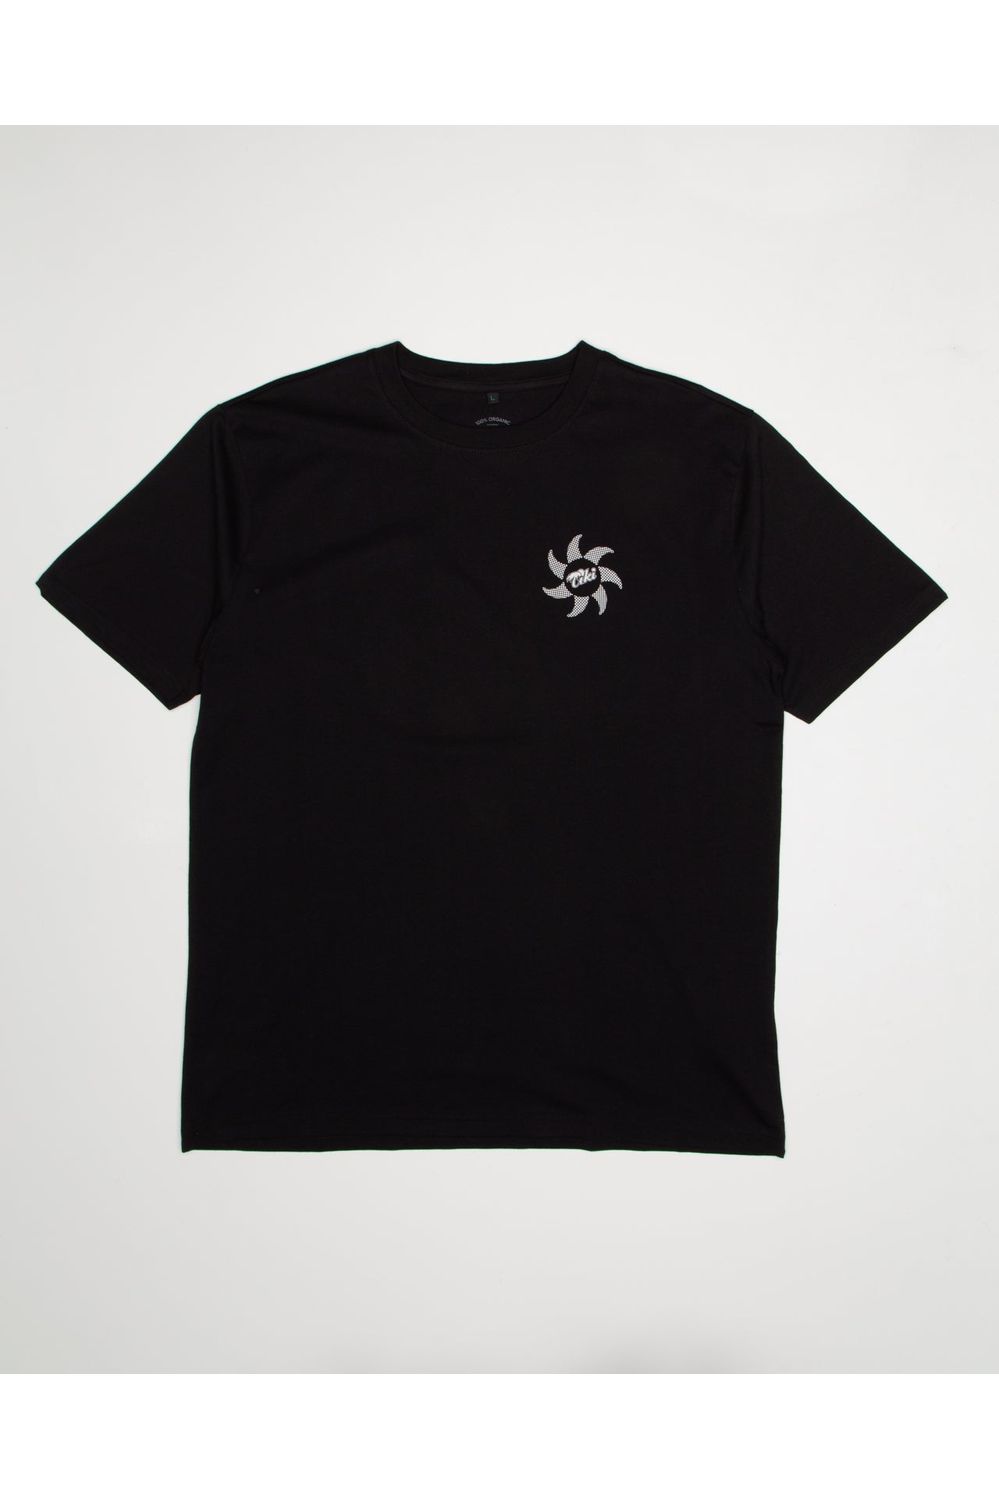 Tiki Manu T-Shirt Short Sleeve Black